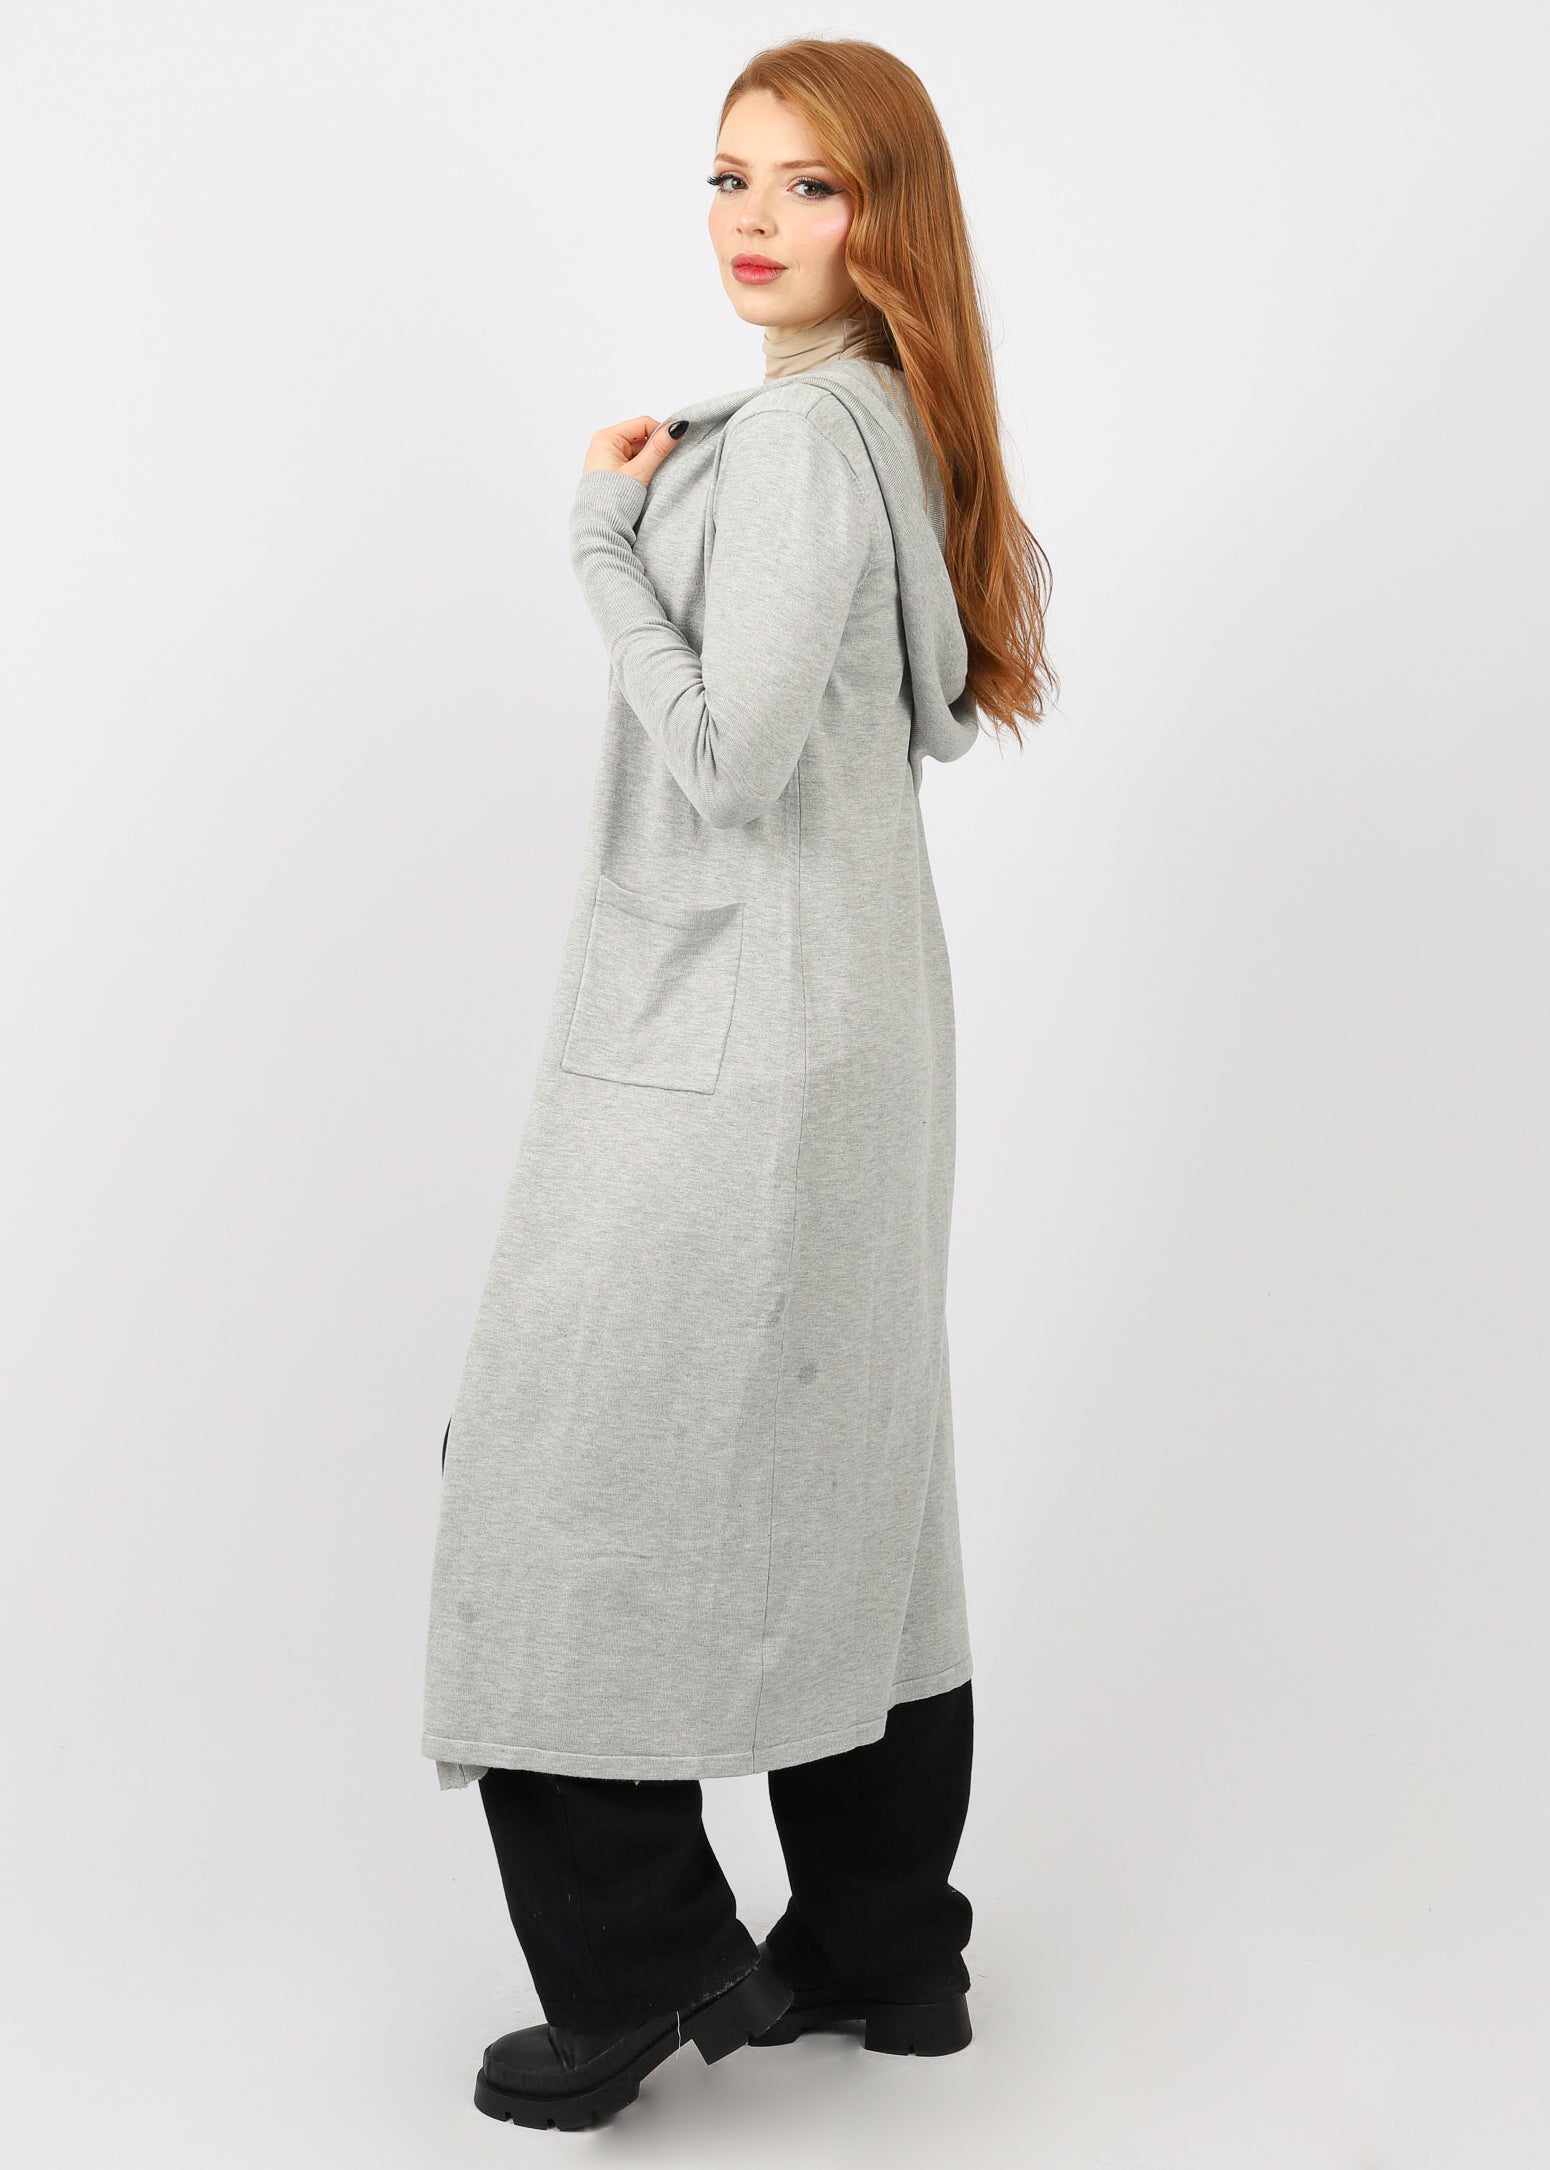 7905-Grey-cardigan-knit